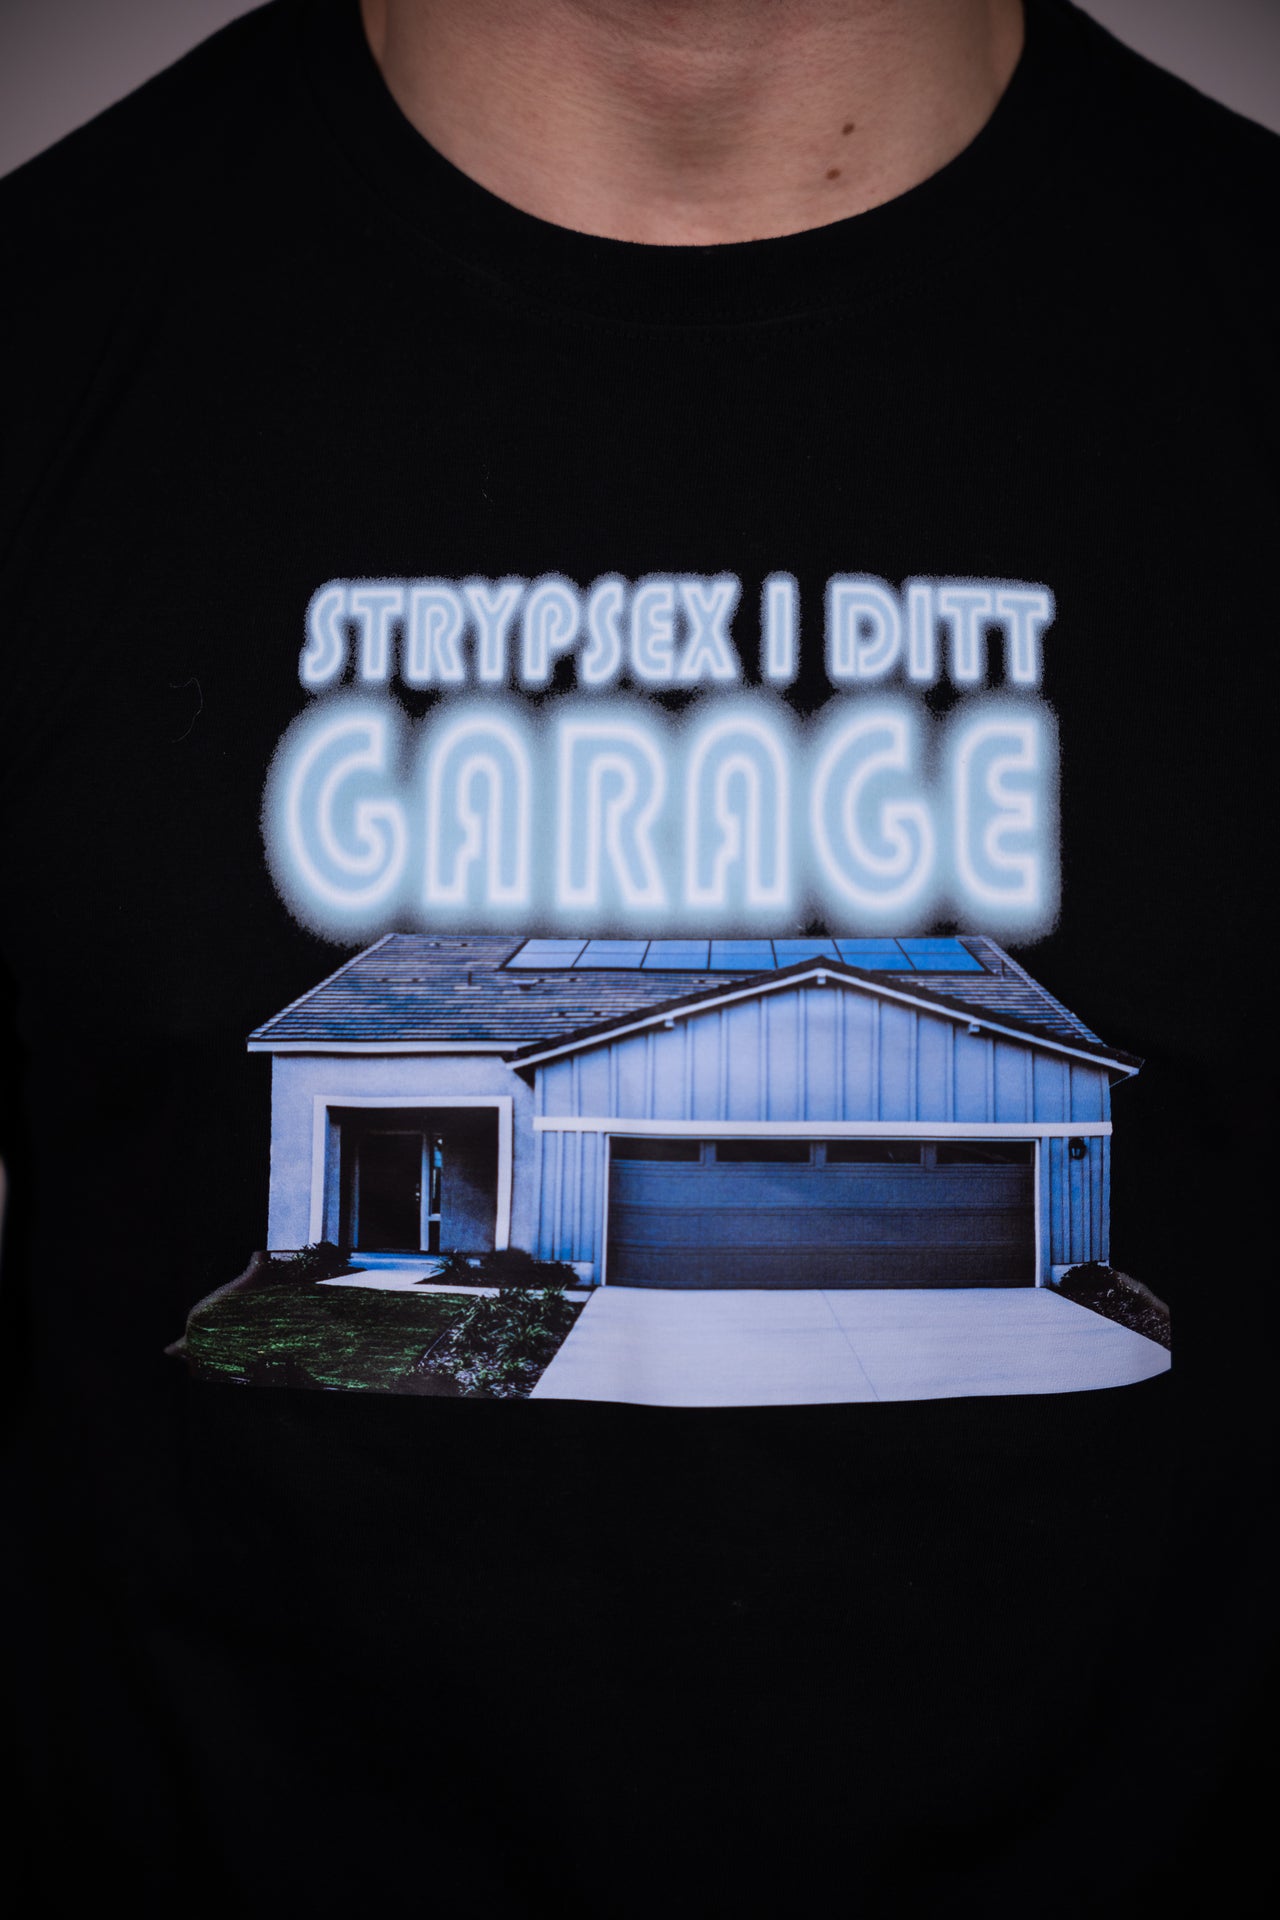 Strypsex i ditt garage T-shirt